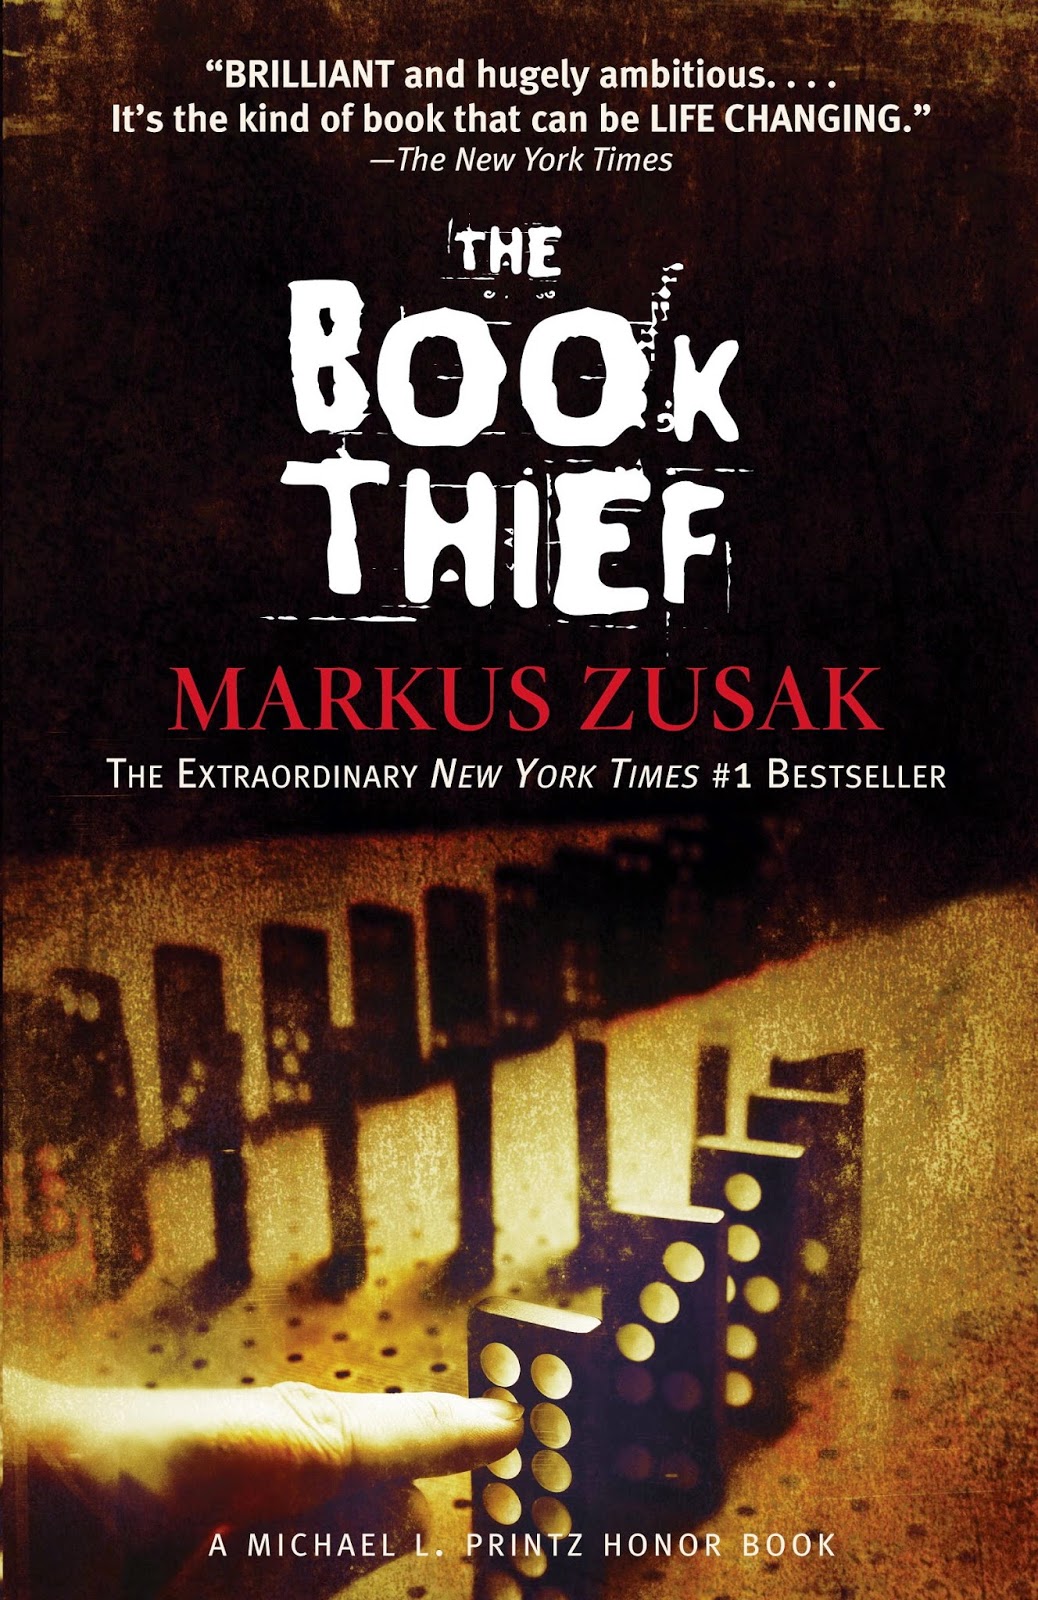 Libro la ladrona de libros. De zusak, markus. - Buscalibre